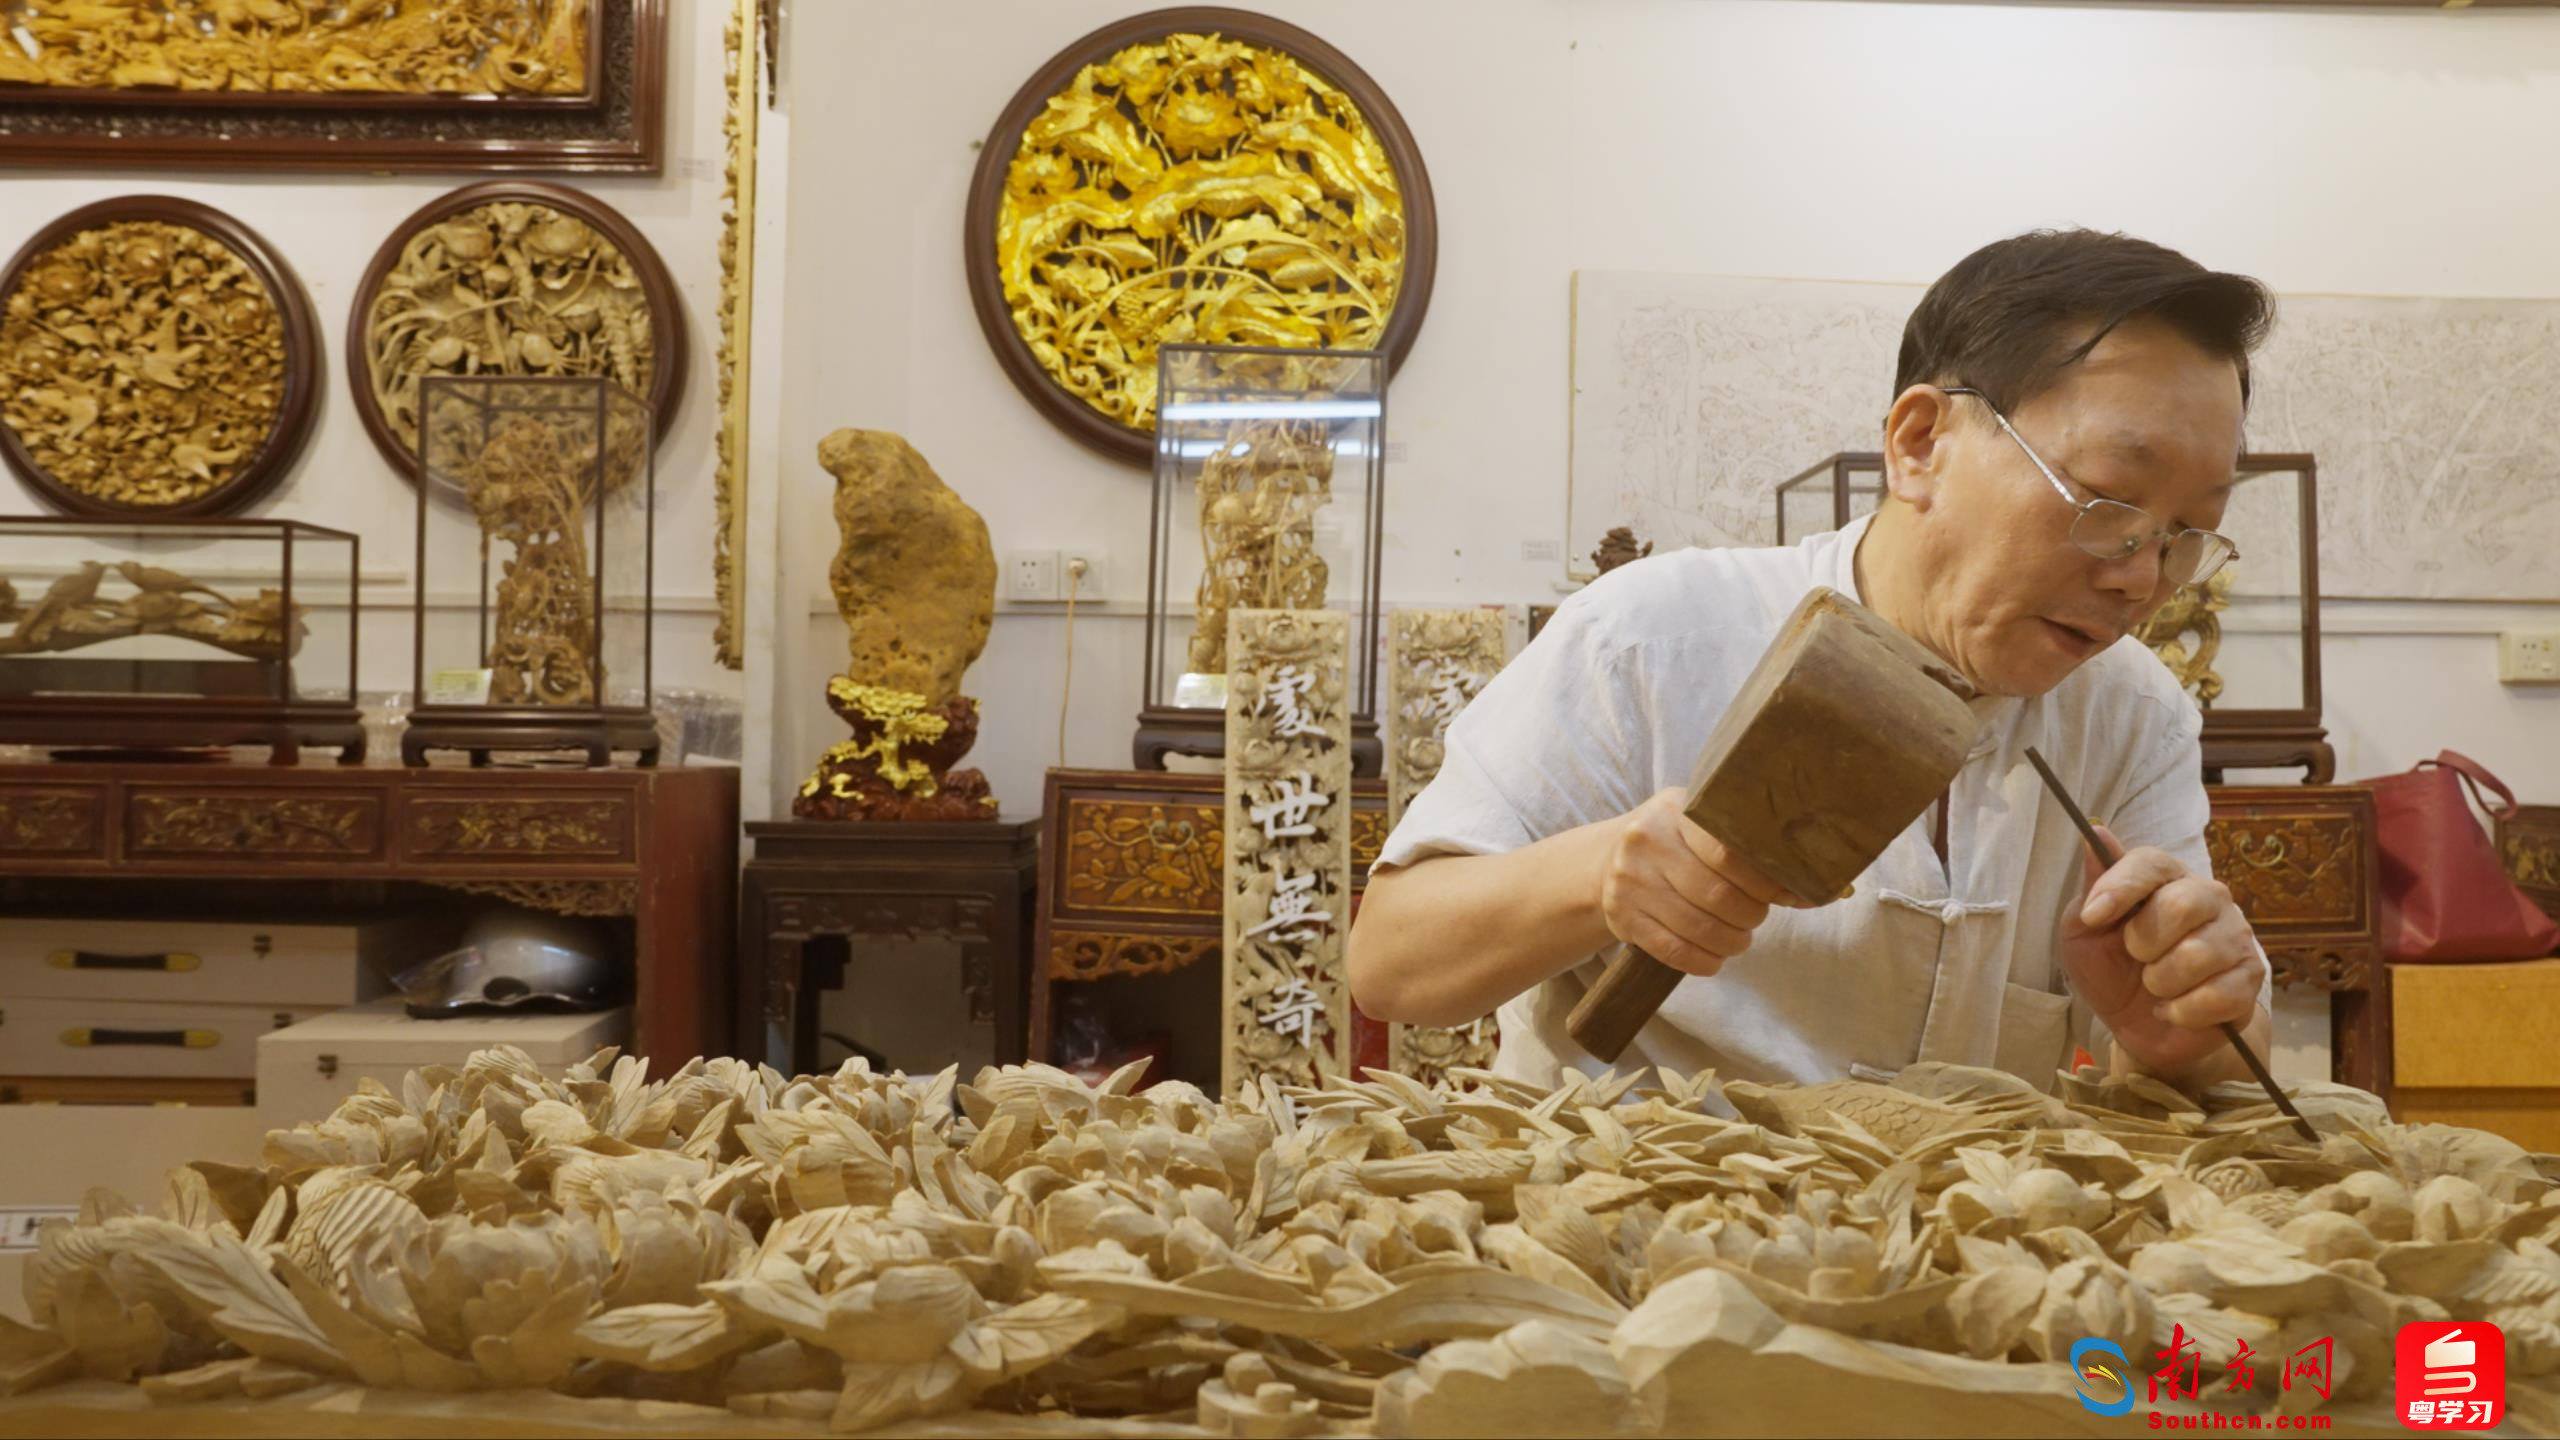 木雕在潮州已传承千年之久。图为金子松在工作室创作木雕。